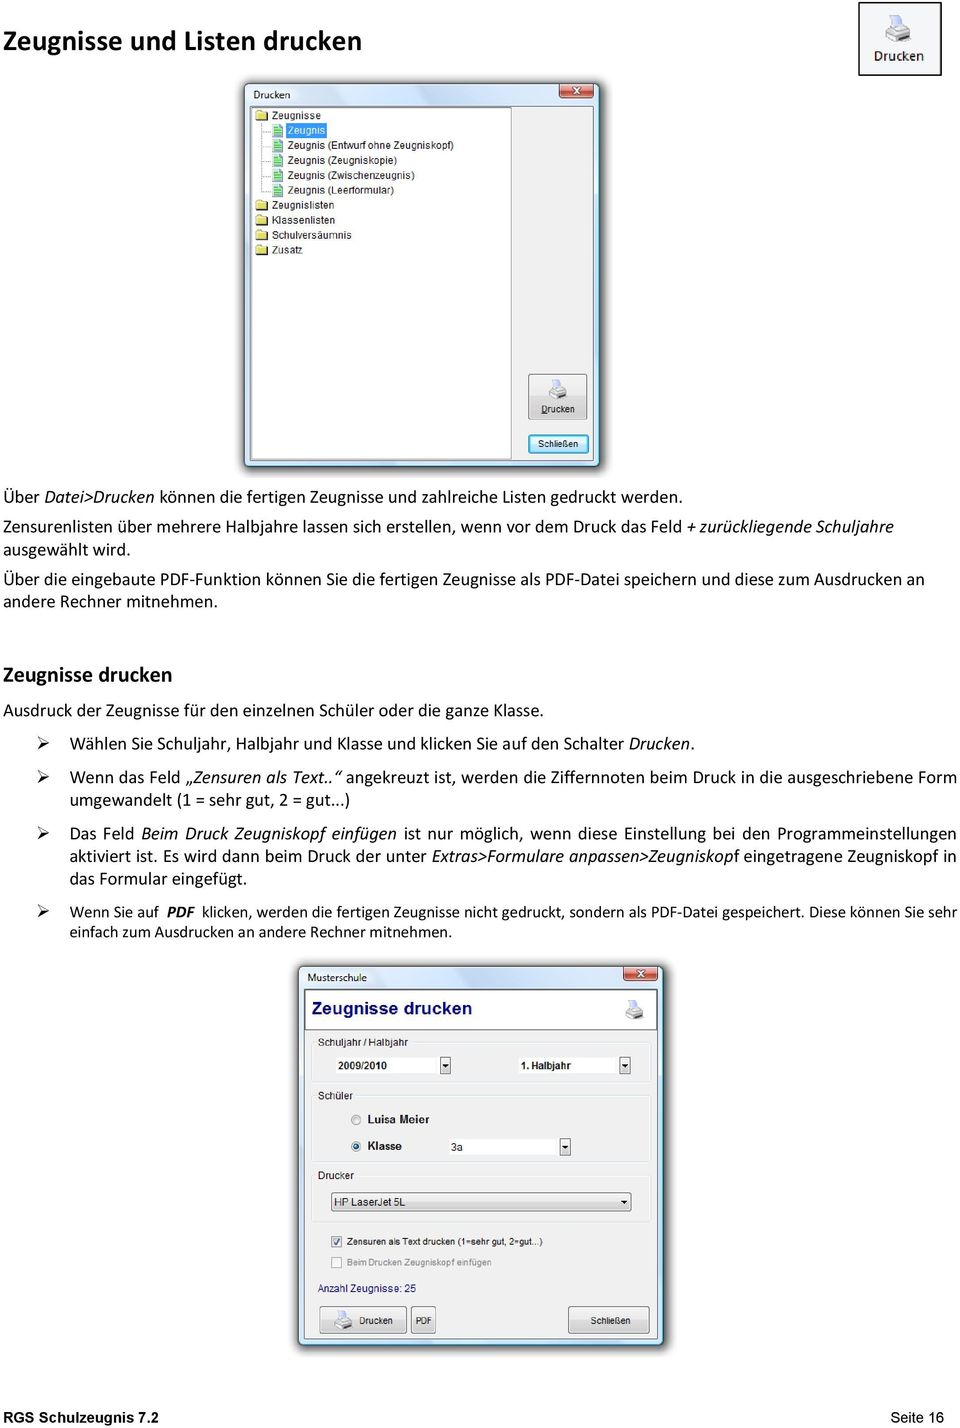 Über die eingebaute PDF-Funktion können Sie die fertigen Zeugnisse als PDF-Datei speichern und diese zum Ausdrucken an andere Rechner mitnehmen.